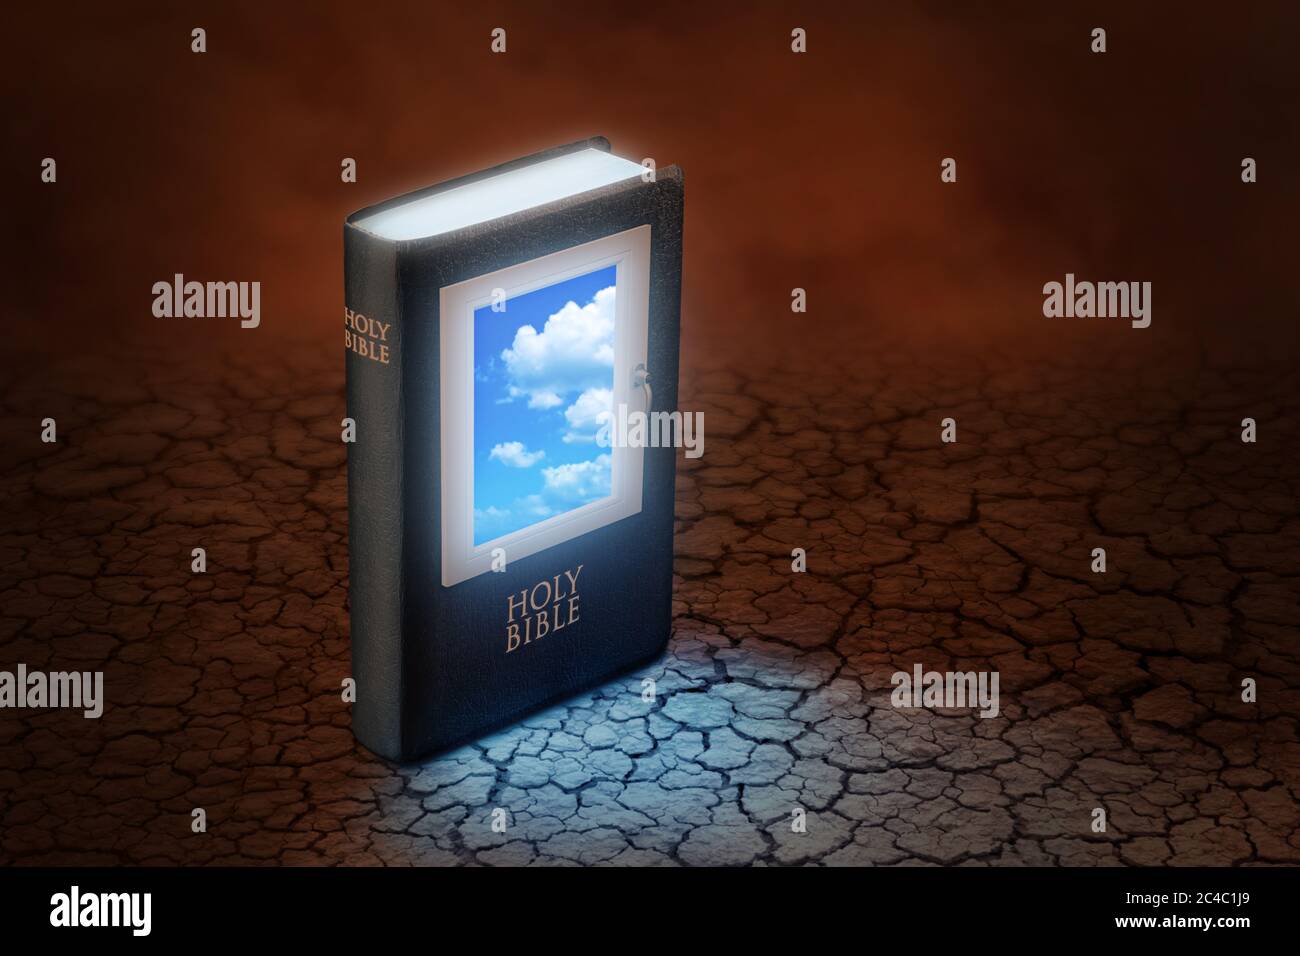 Sainte Bible avec une fenêtre sur la couverture à travers laquelle le ciel bleu peut être vu, debout sur une terre rougeâtre sèche et fissurée. Concept de la Bible que je Banque D'Images